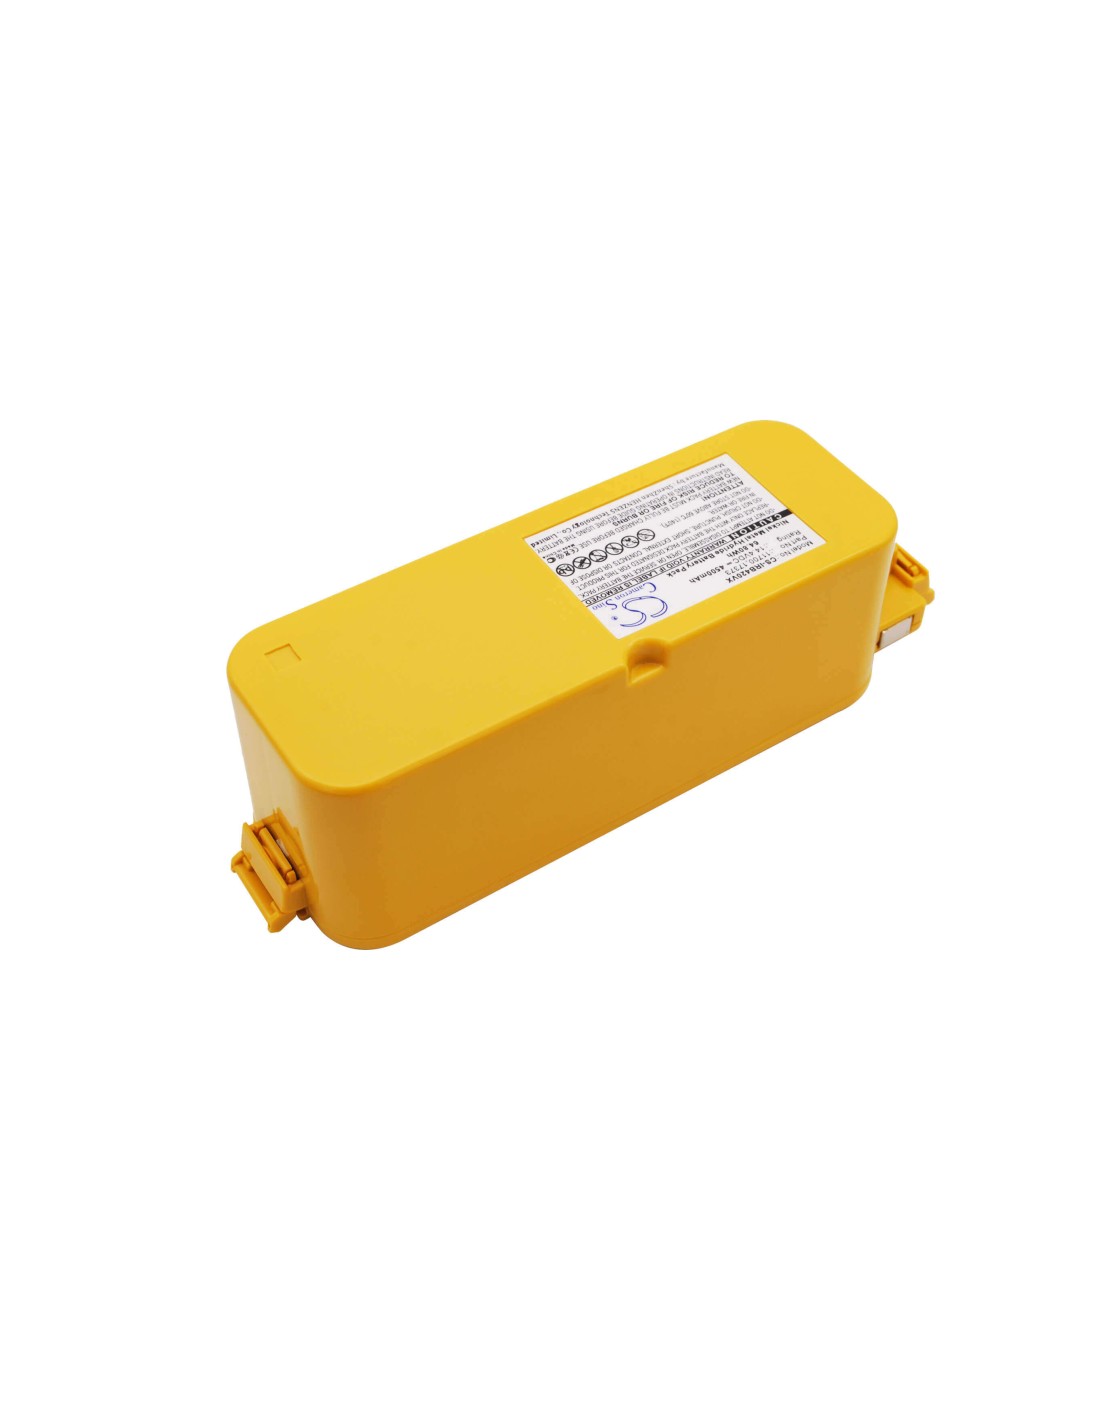 Battery for Irobot Aps 4905, Create, Dirt Dog 14.4V, 4500mAh - 64.80Wh